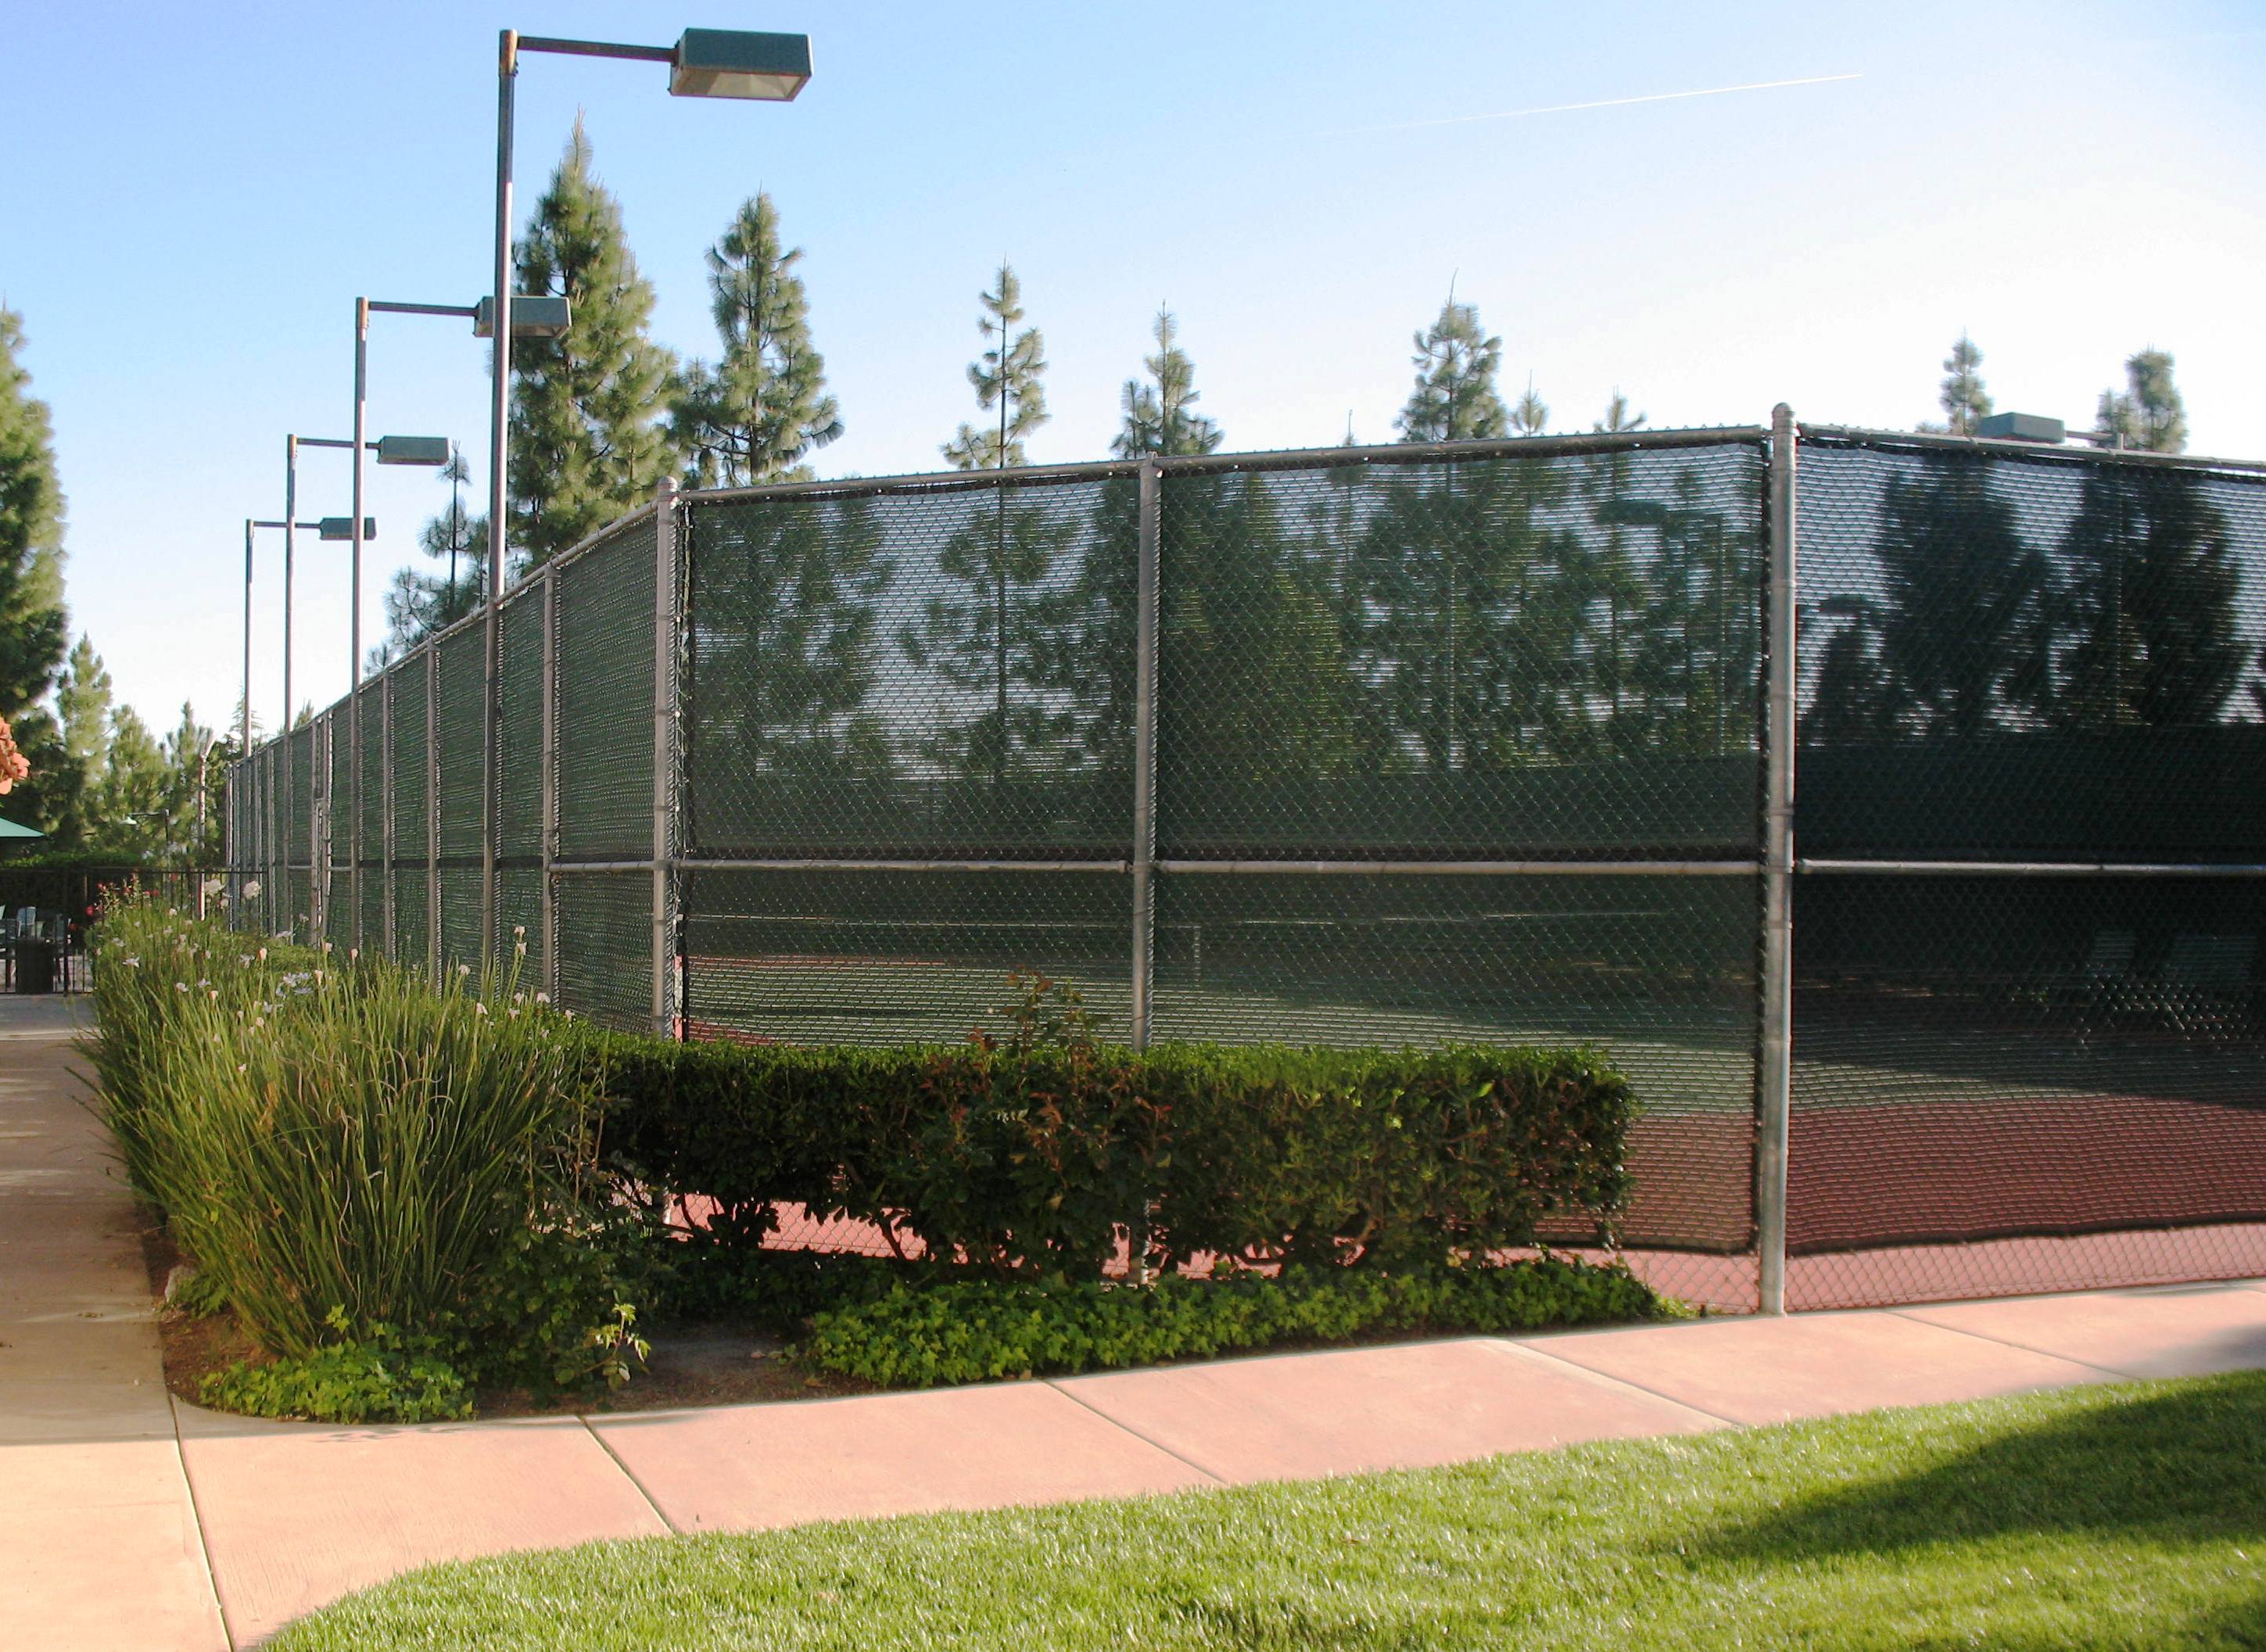 crown-hills-tennis-courts